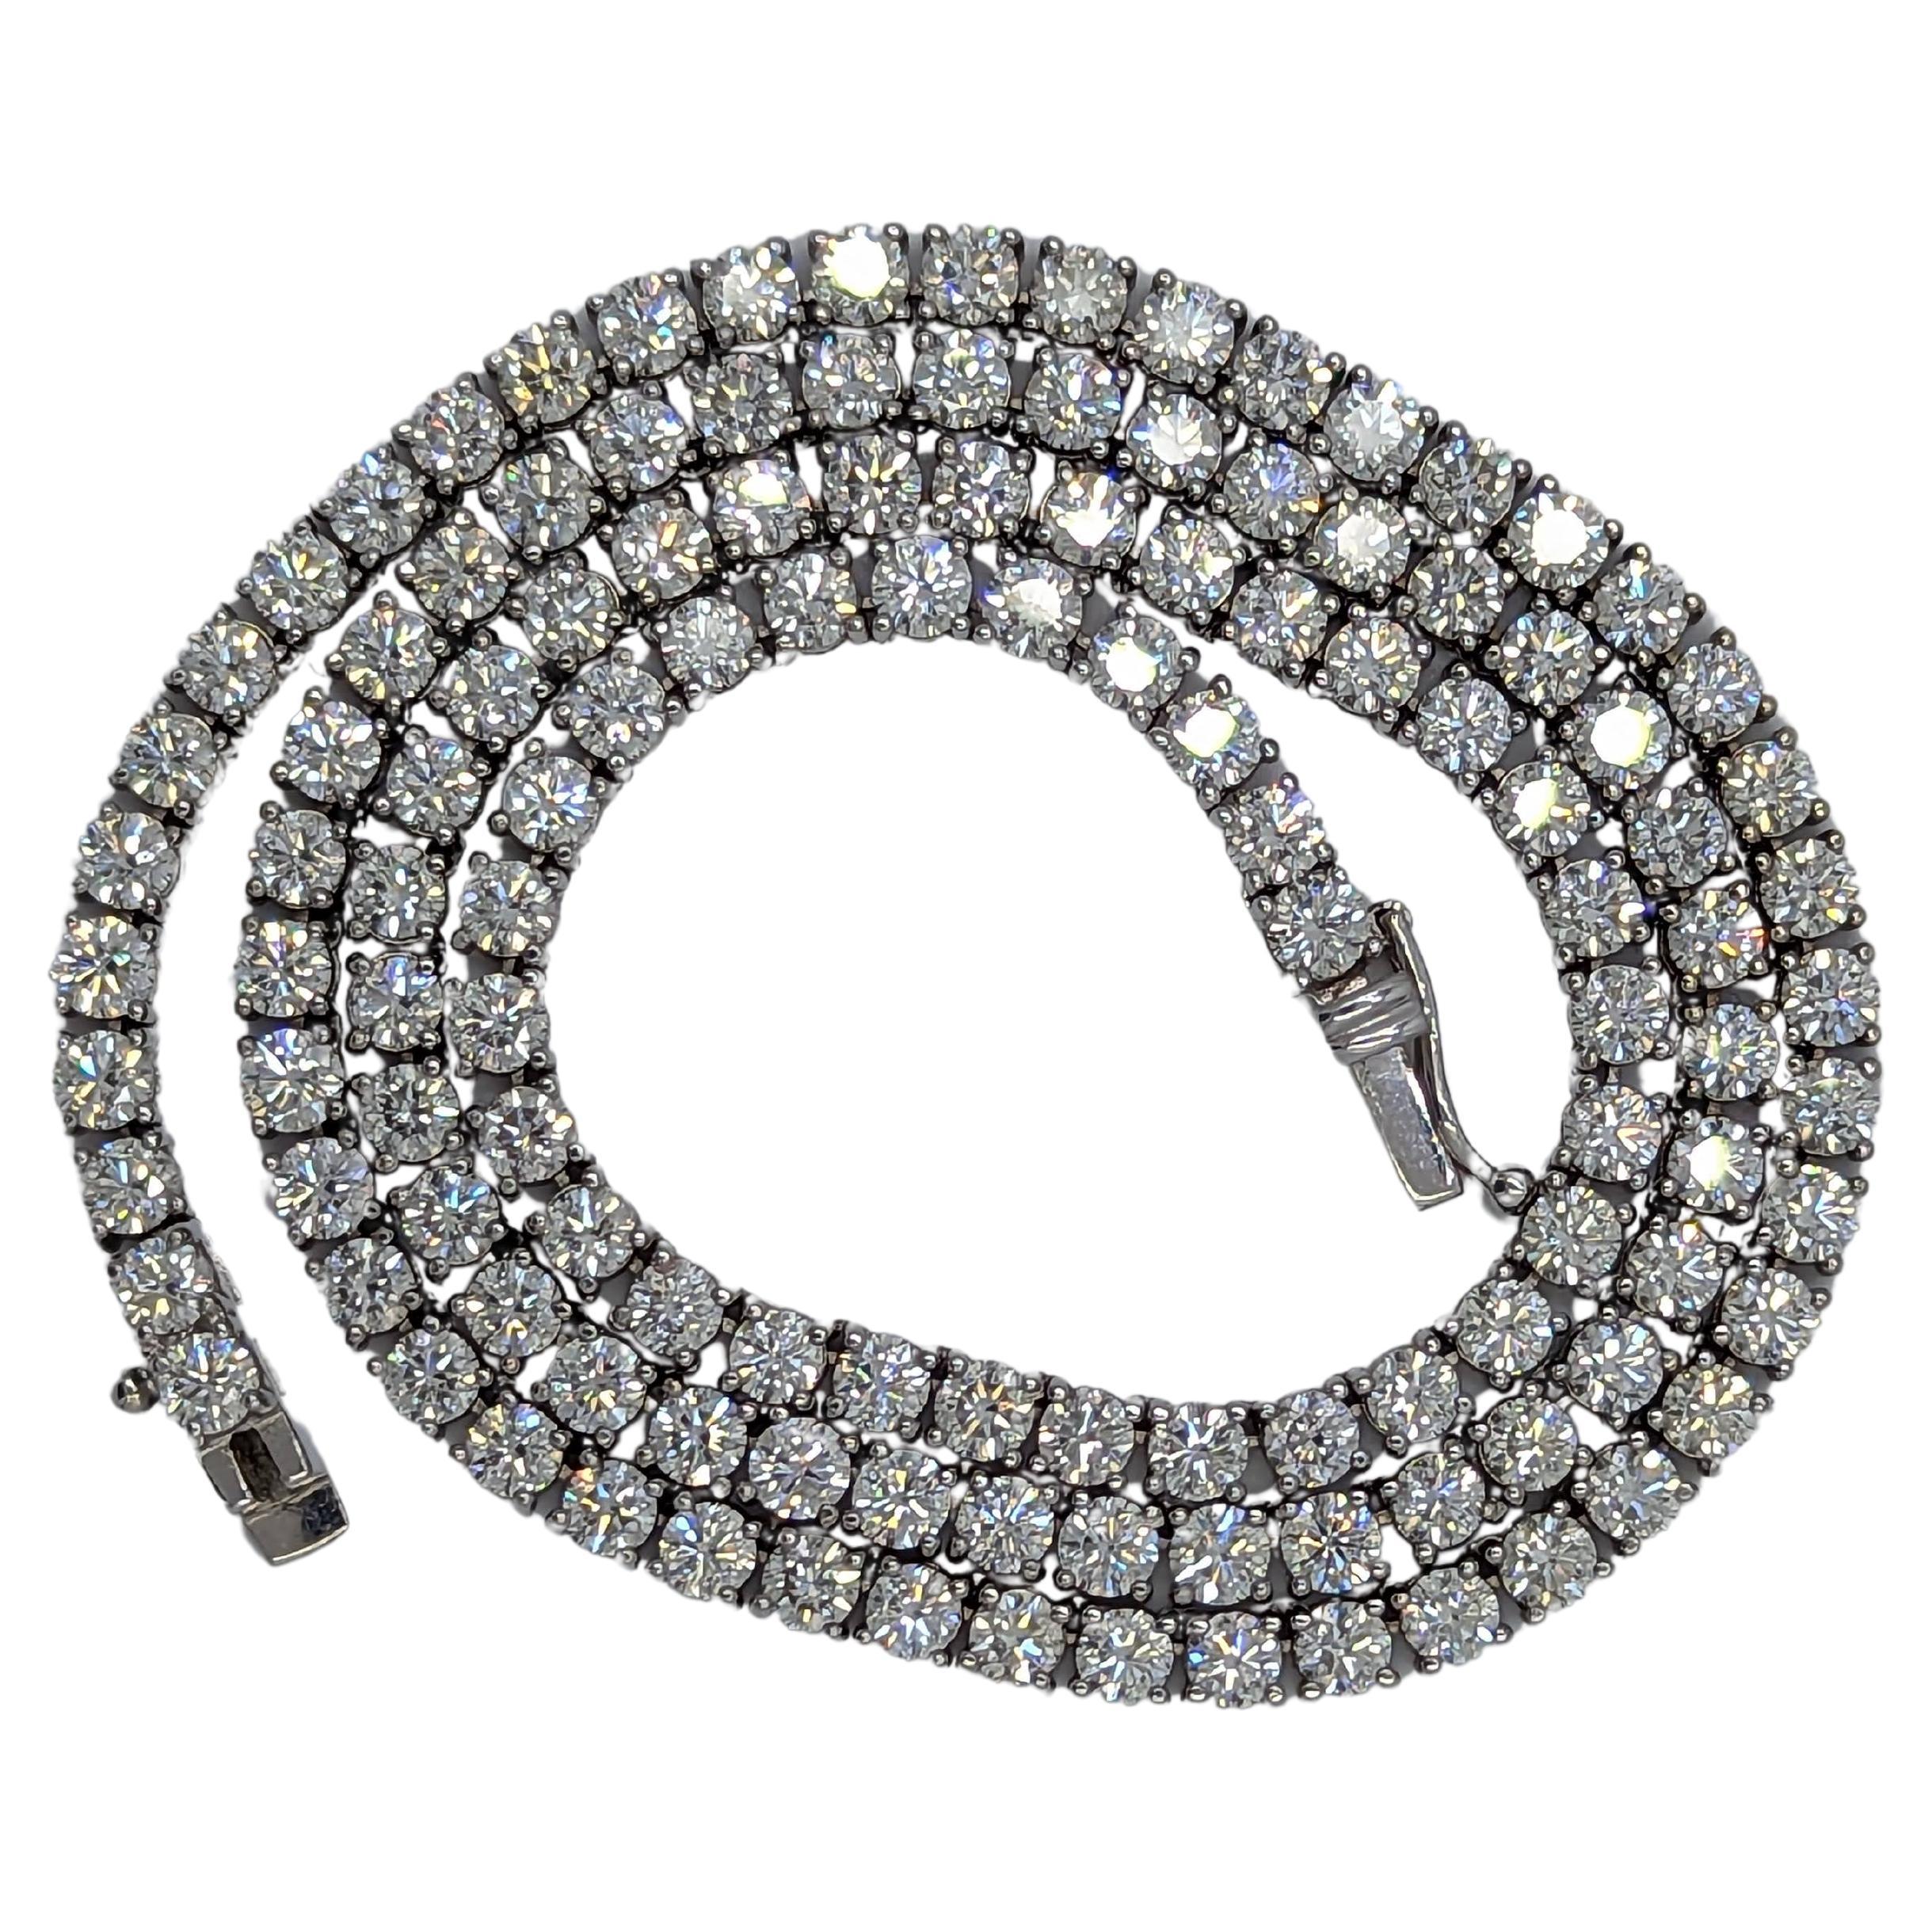 Authentizitätsgarantie 14K Weißgold 20,00 Karat makellose Diamant-Tennis-Halskette